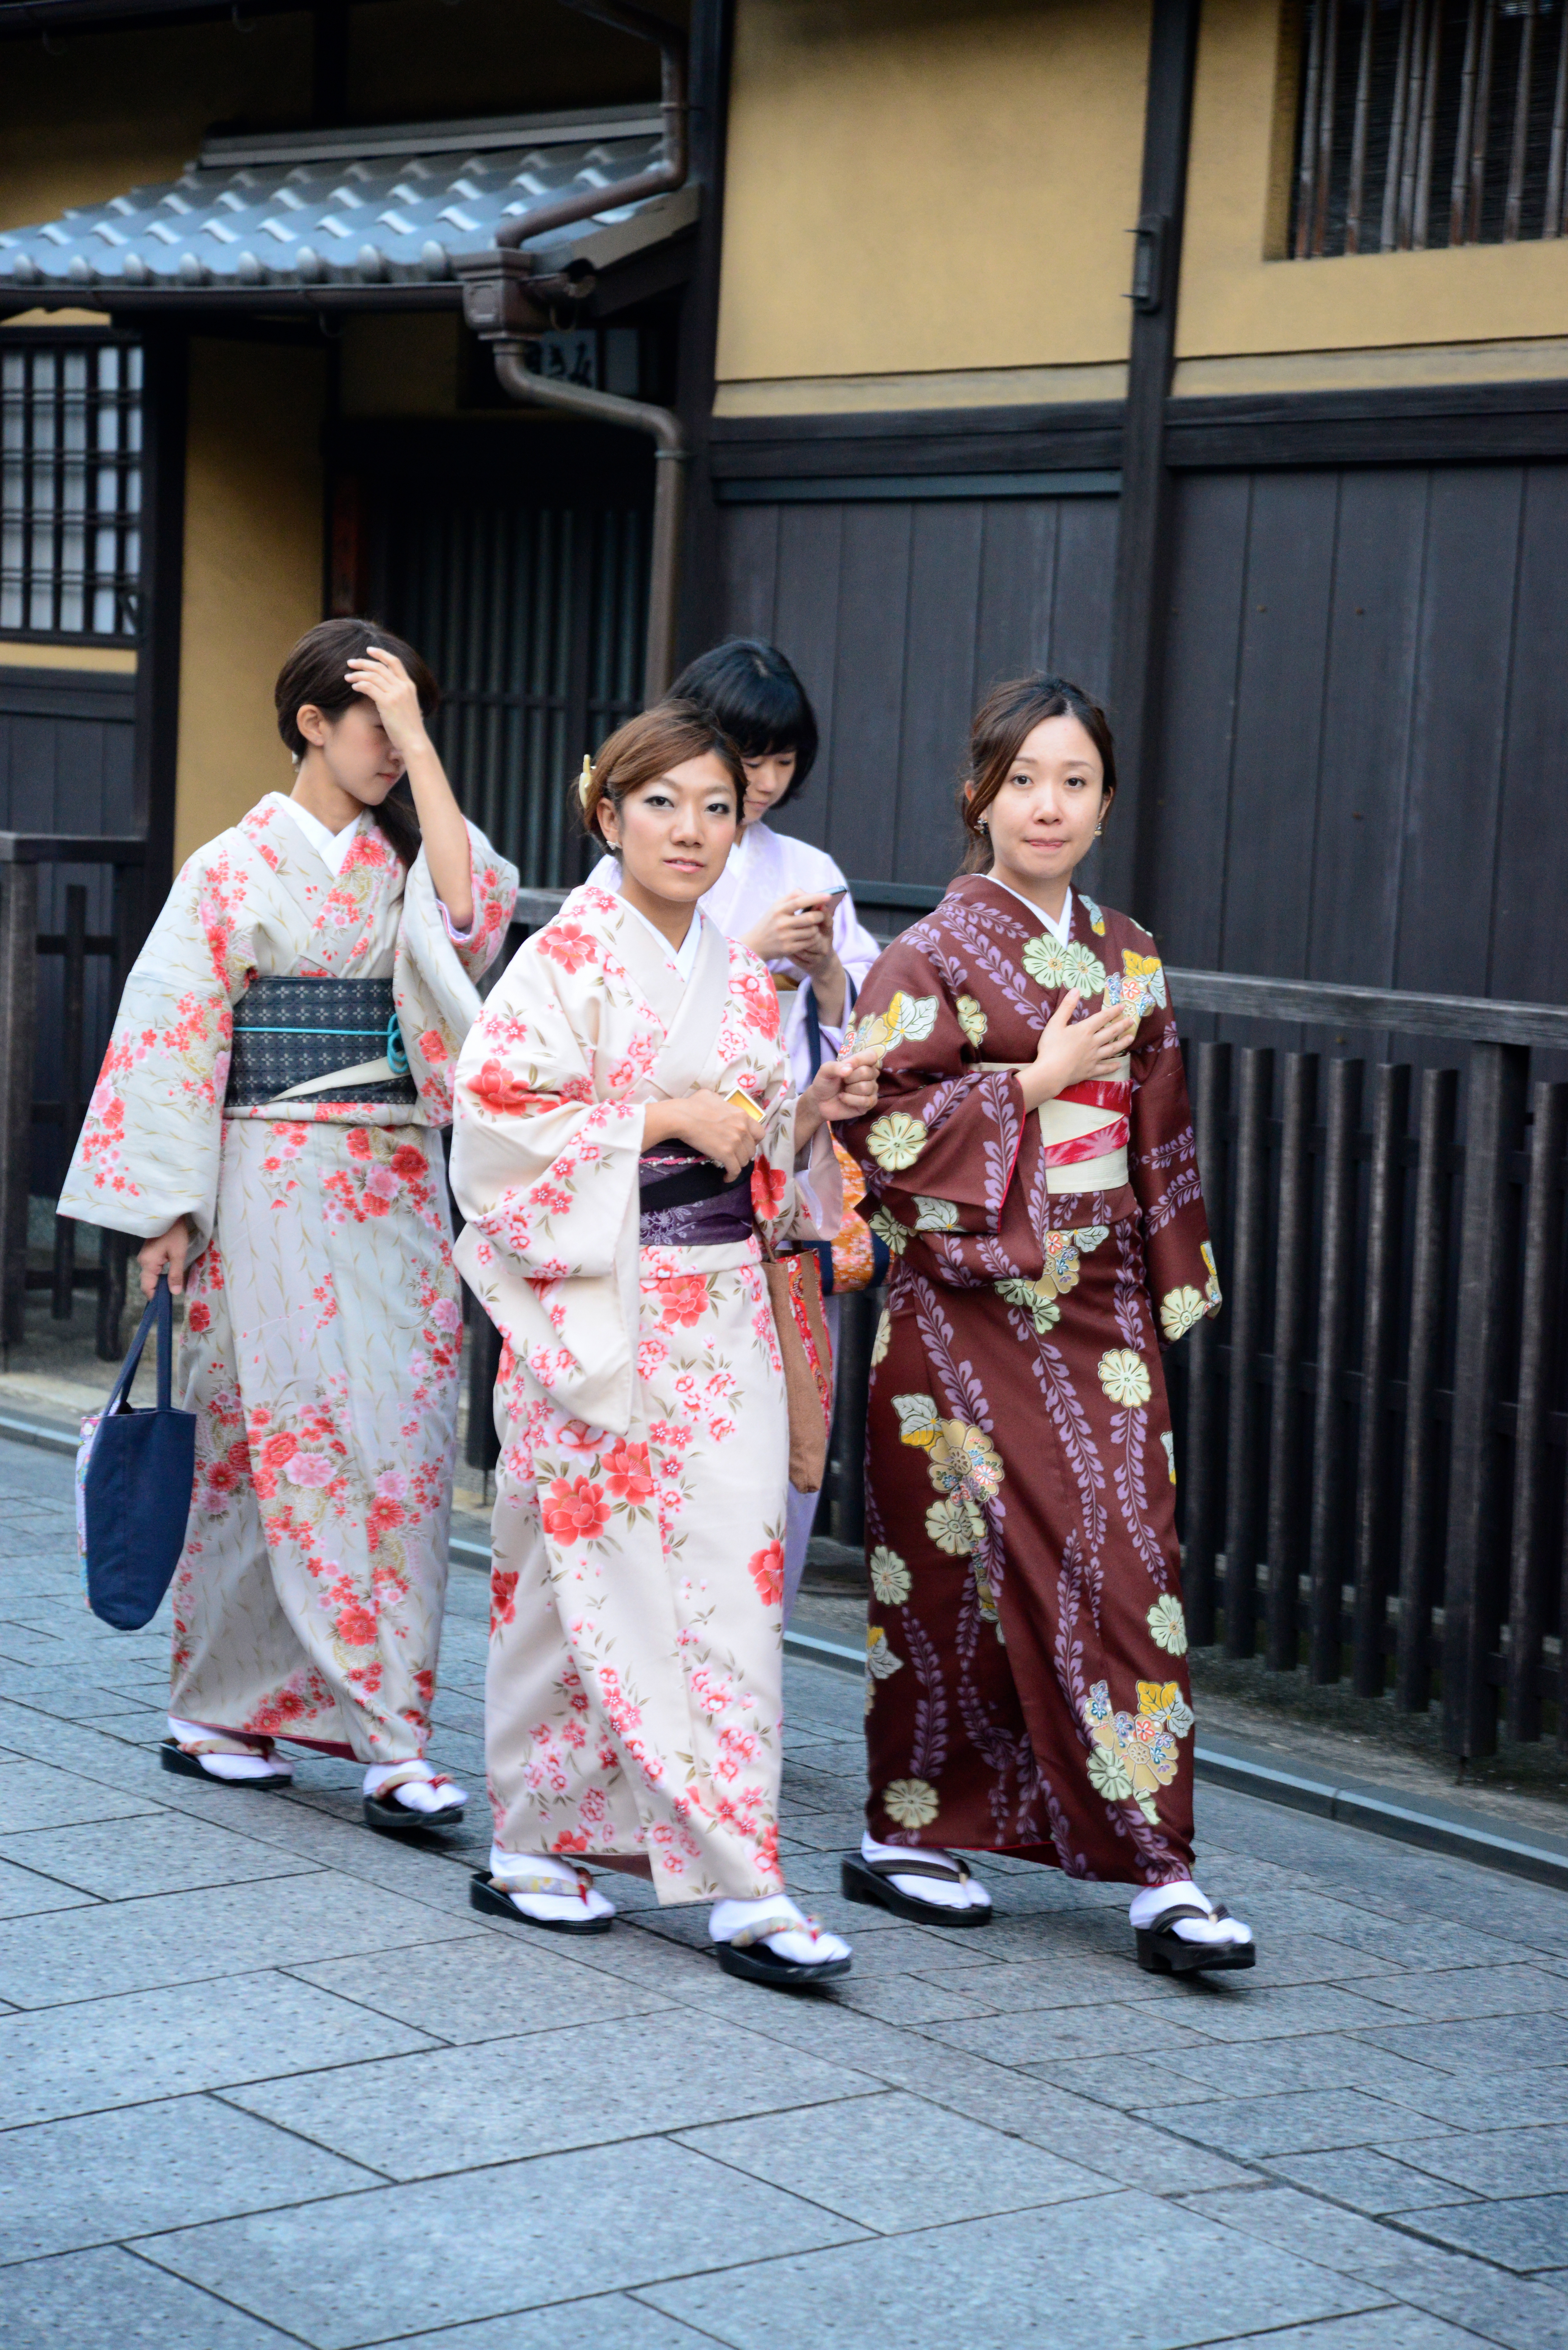 Jovens japonesas com trajes tradicionais no bairro de Gion.